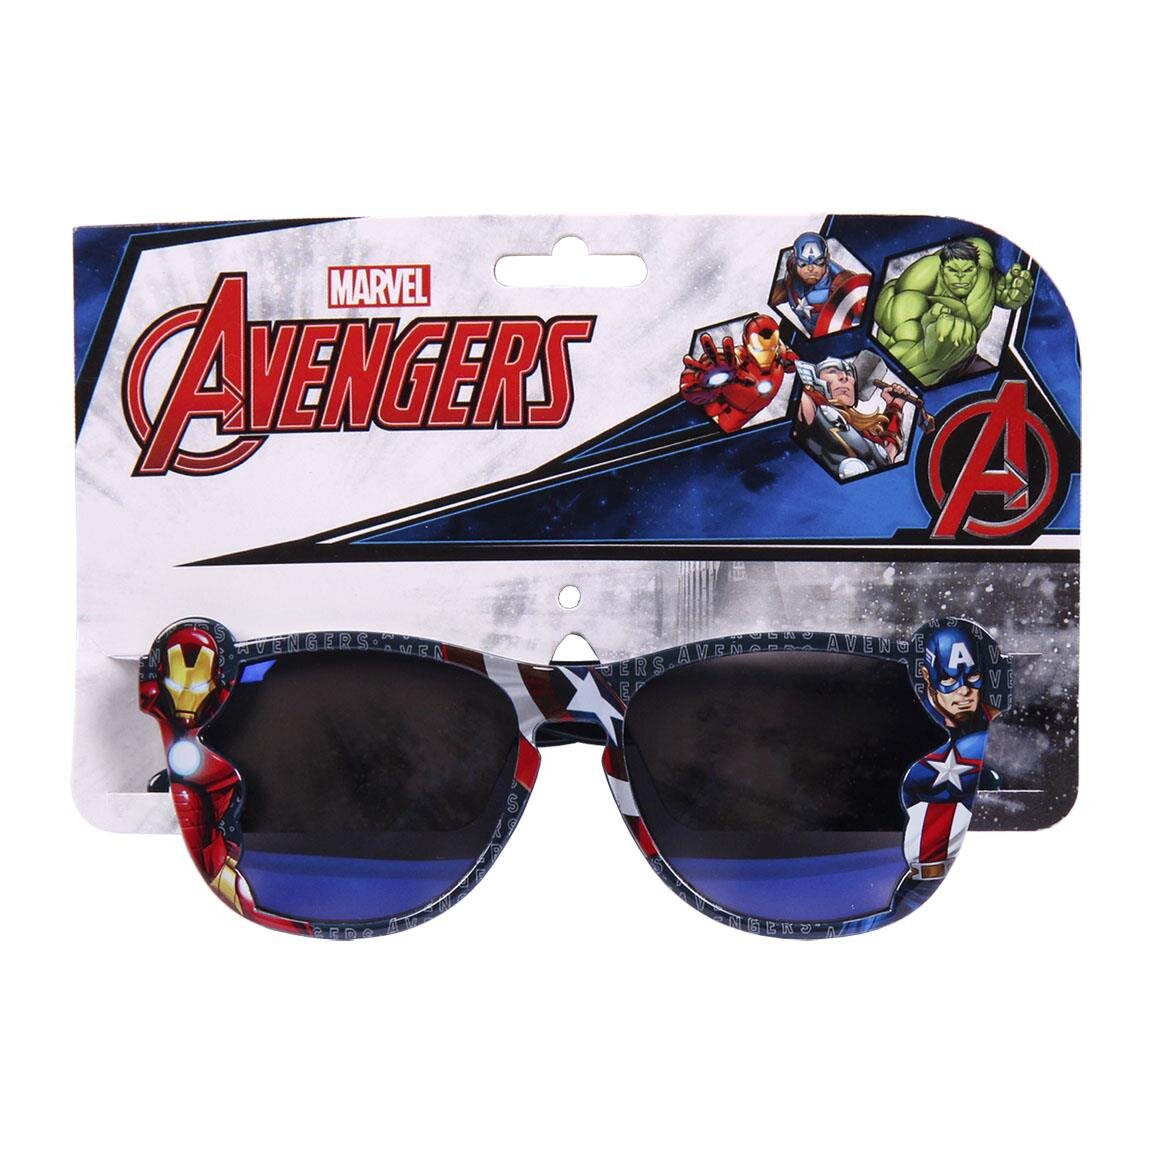 Avengers Marvel - Solbriller til børn